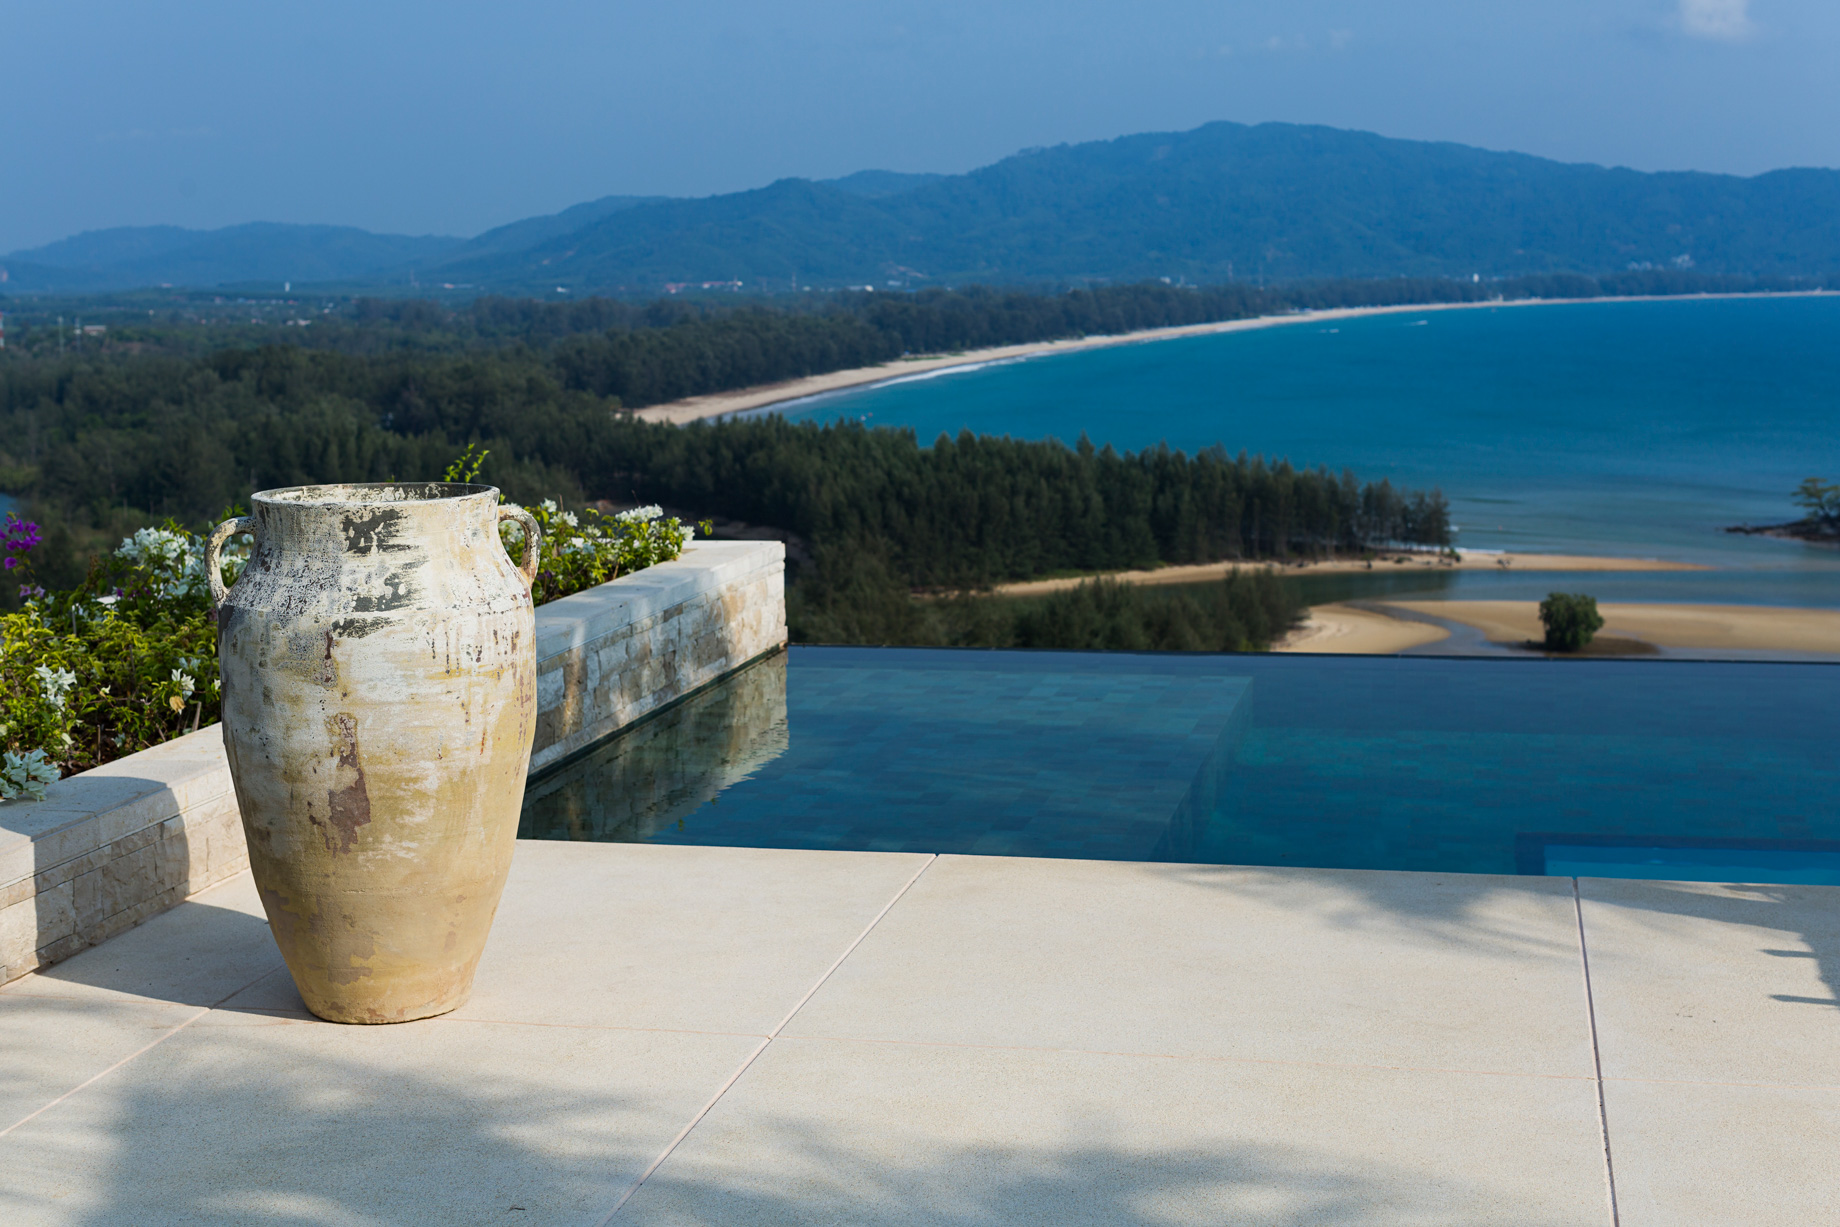 Anantara Layan Phuket Resort & Residences – Thailand – Residence Pool Deck View